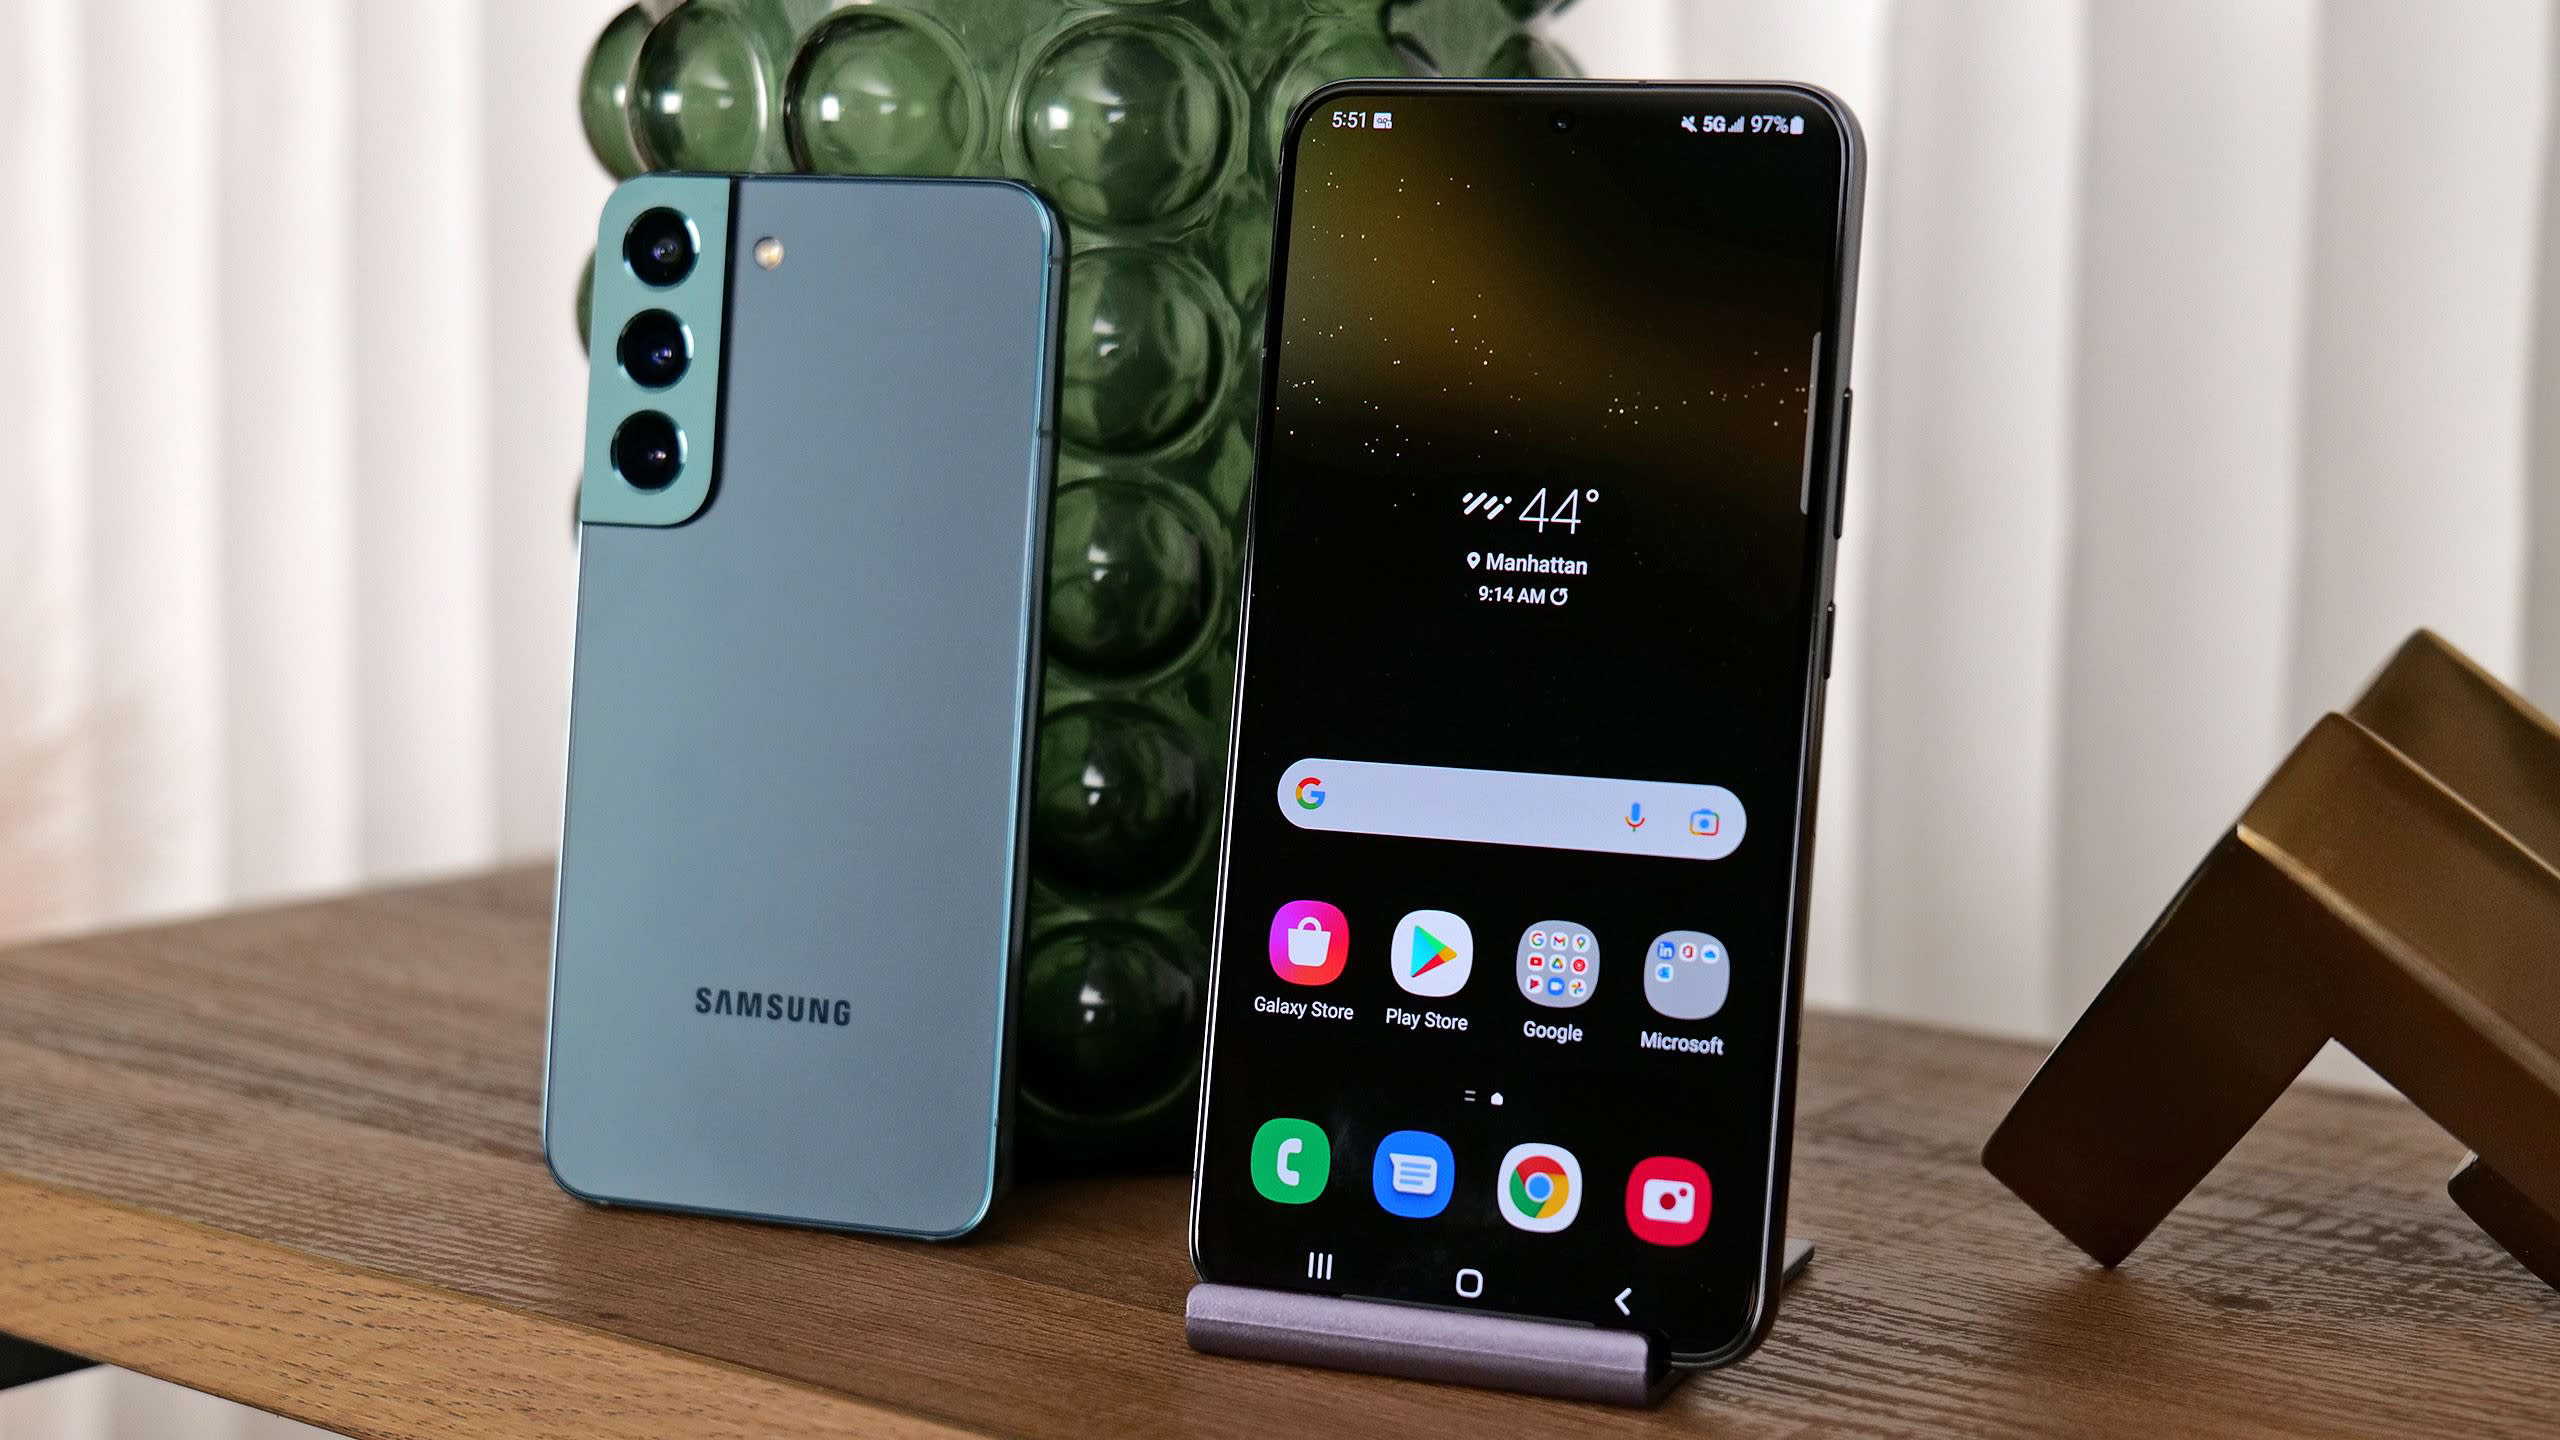 Samsung Galaxy S22 cũ không hề kém cạnh so với phiên bản mới nhất. Hãy xem ảnh và tìm hiểu thêm về sản phẩm này để quyết định liệu đây có phải là lựa chọn tuyệt vời cho bạn không.